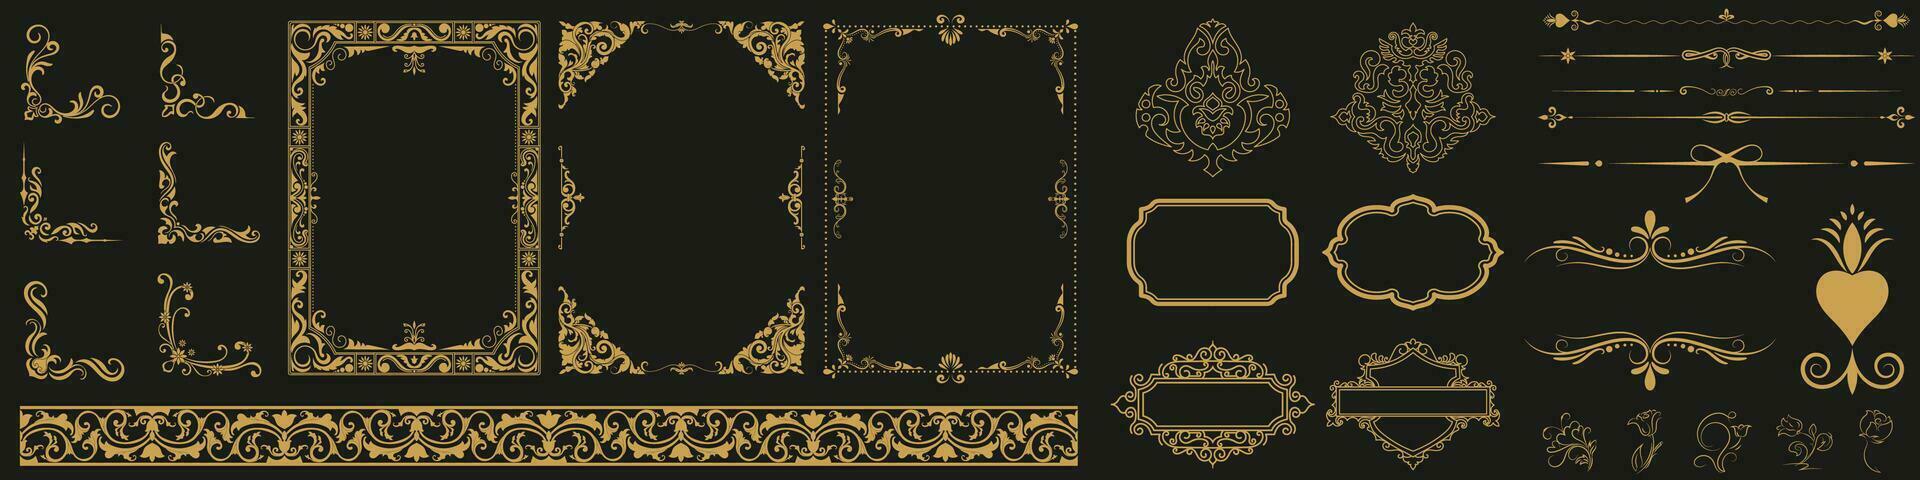 dorado Clásico conjunto incluye decorativo papel marcos, texto cajas y desplazamiento floral fronteras utilizando Rosa oro línea diseño con Clásico esquina tapiz fronteras vector